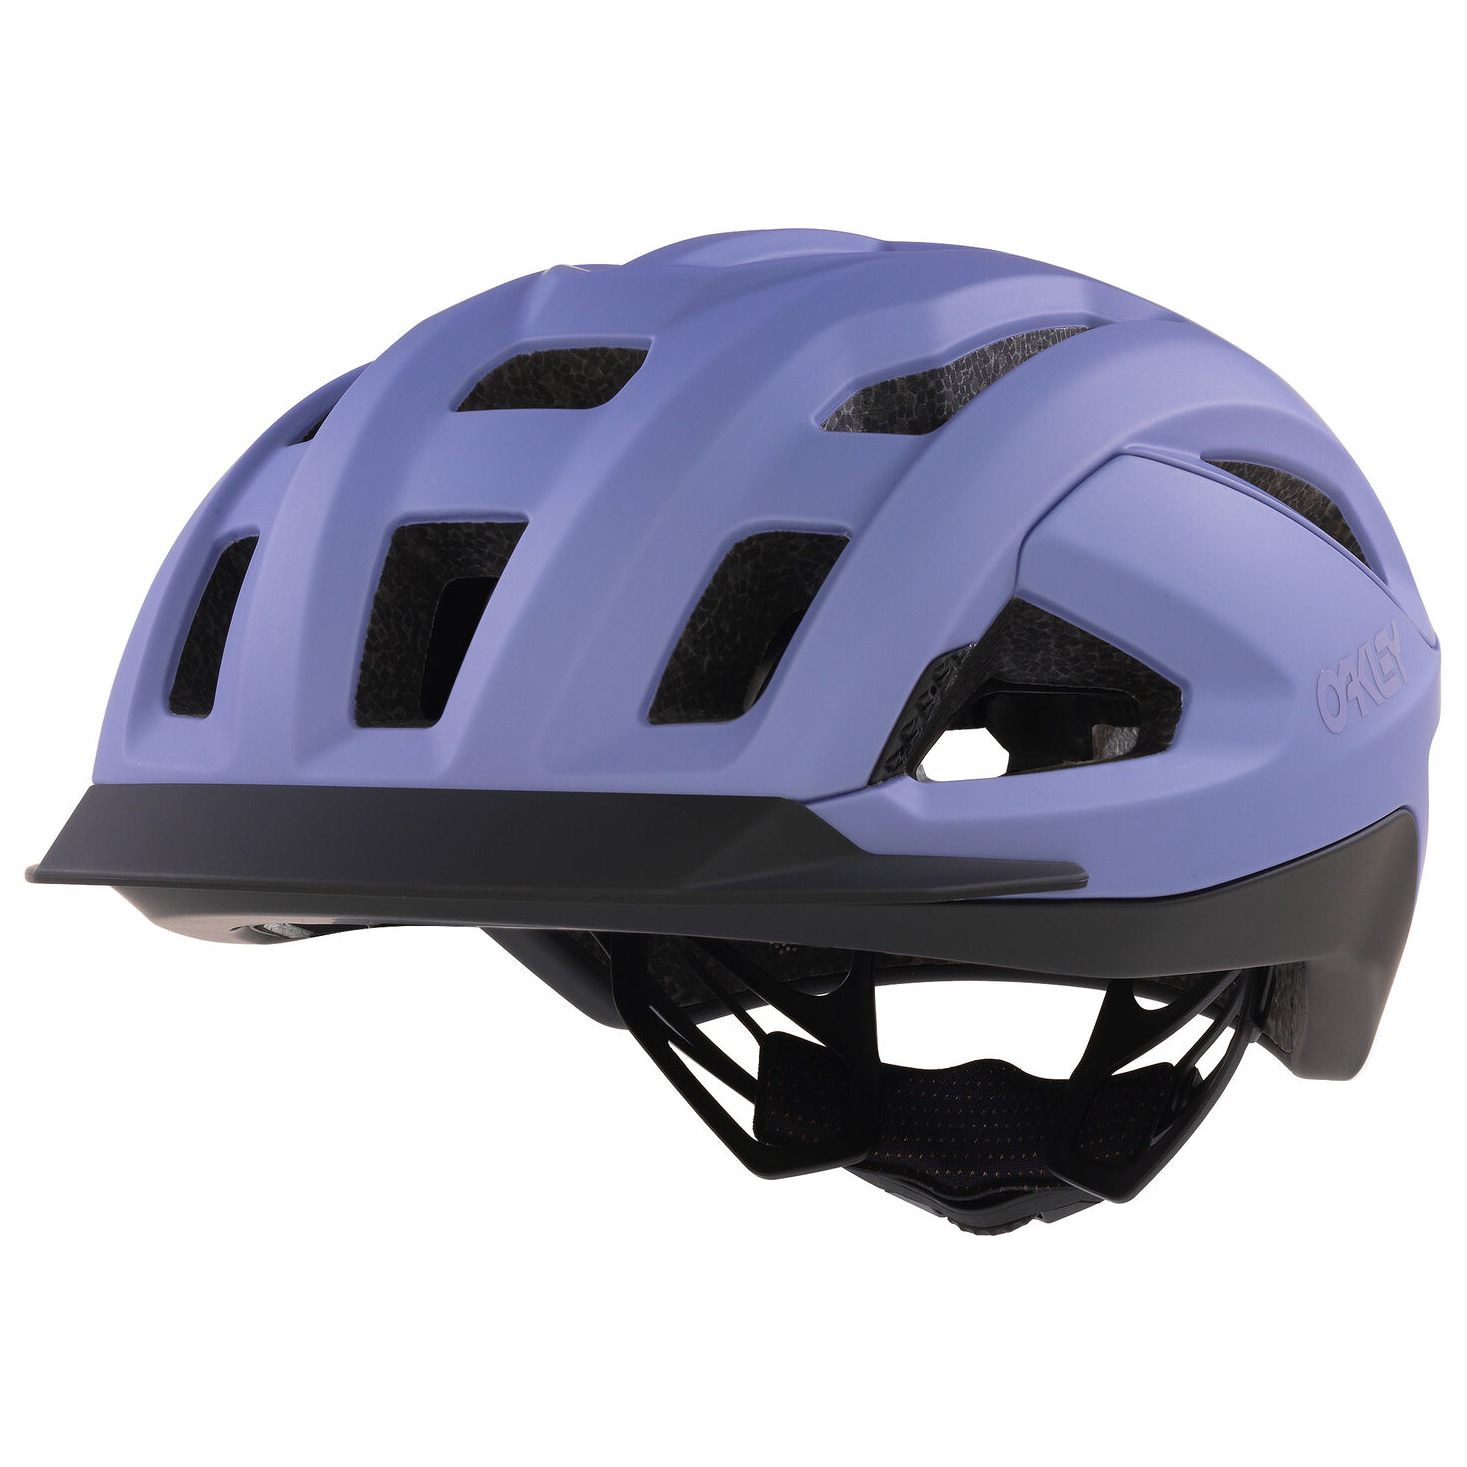 Велосипедный шлем Oakley ARO3 Allroad, матовый сиреневый